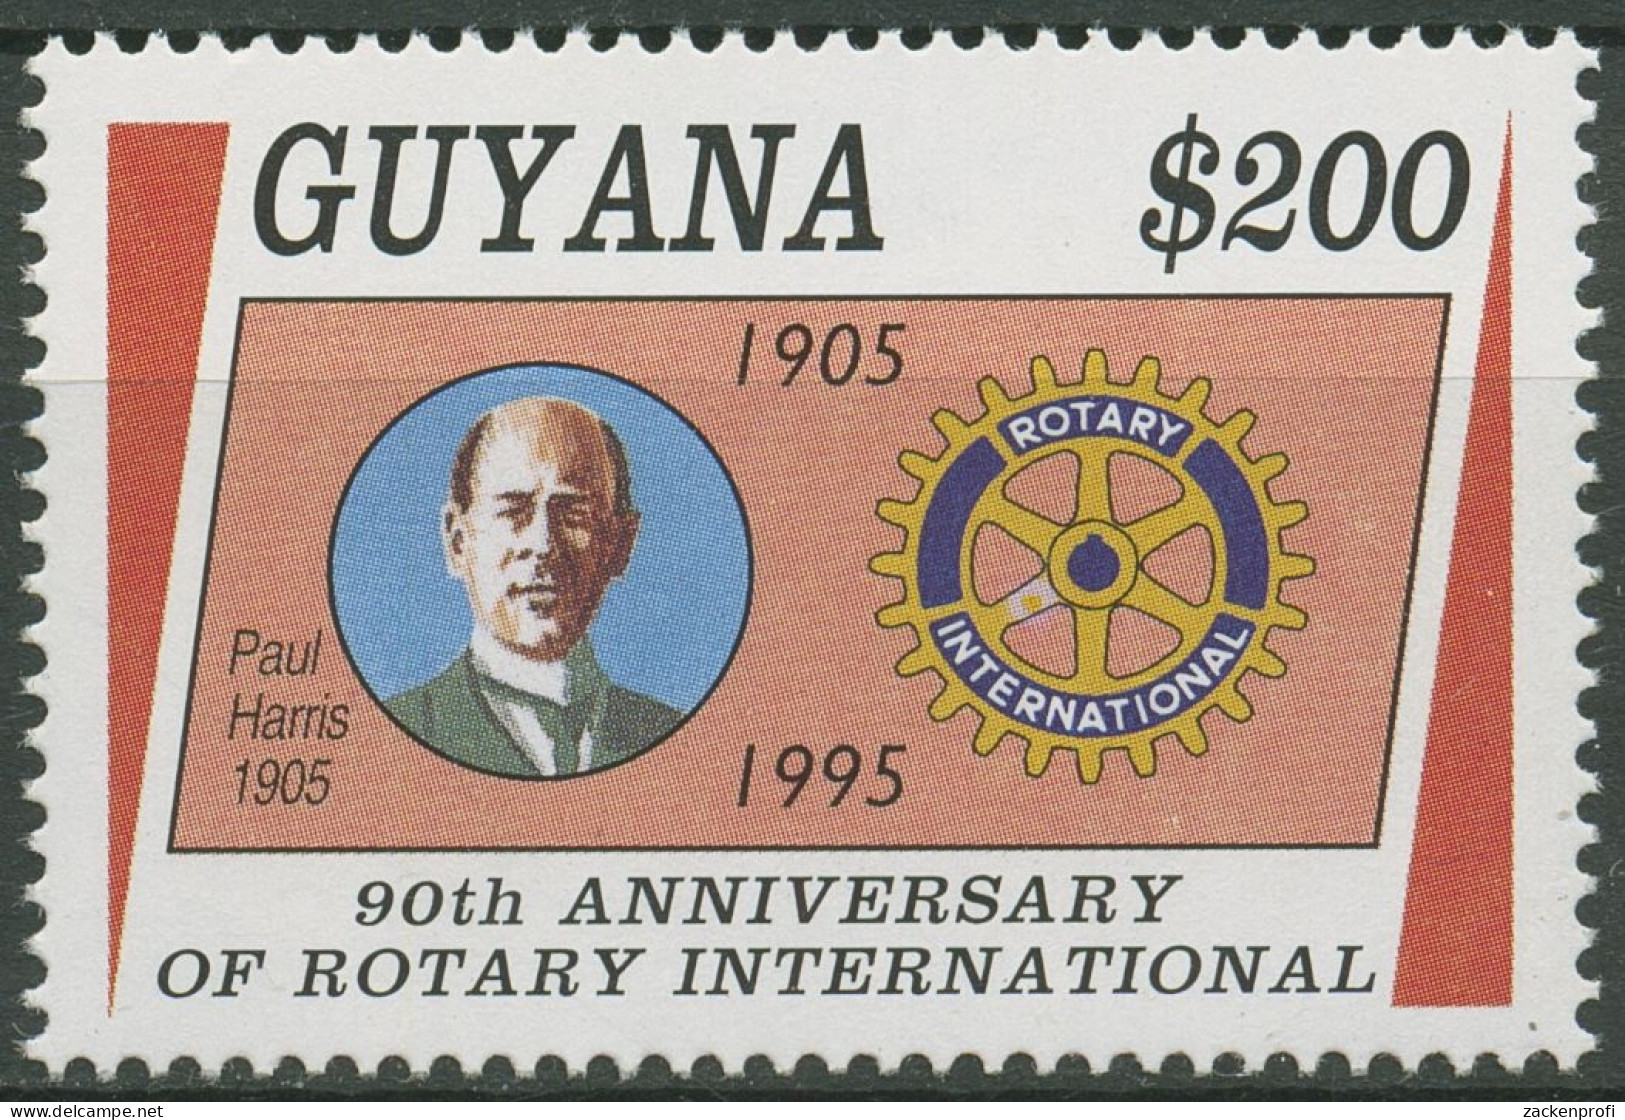 Guyana 1995 Rotary Club International Paul Harris 5216 Postfrisch - Guyane (1966-...)